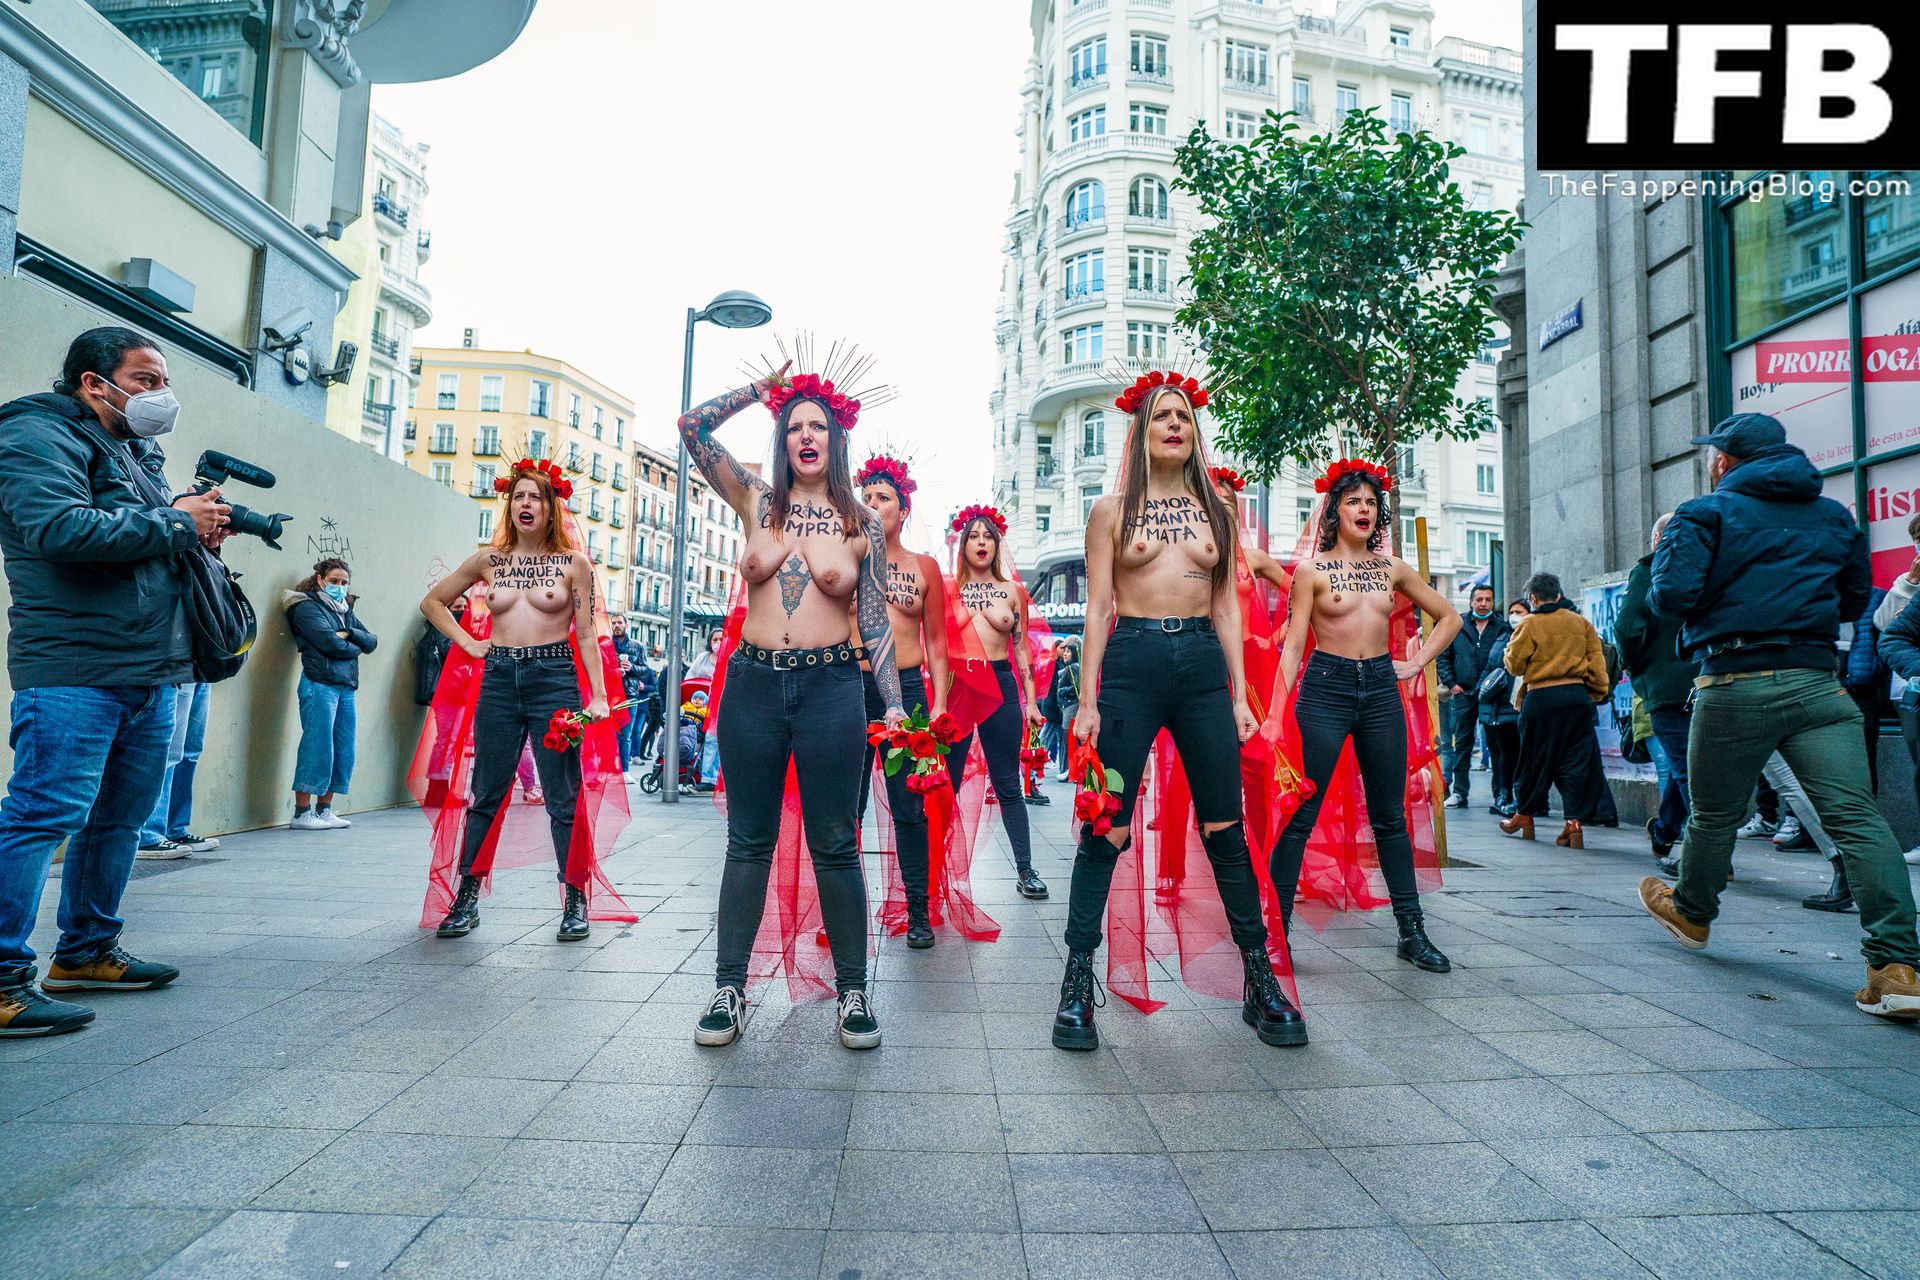 FEMEN-Topless-Girls-The-Fappening-Blog-17.jpg